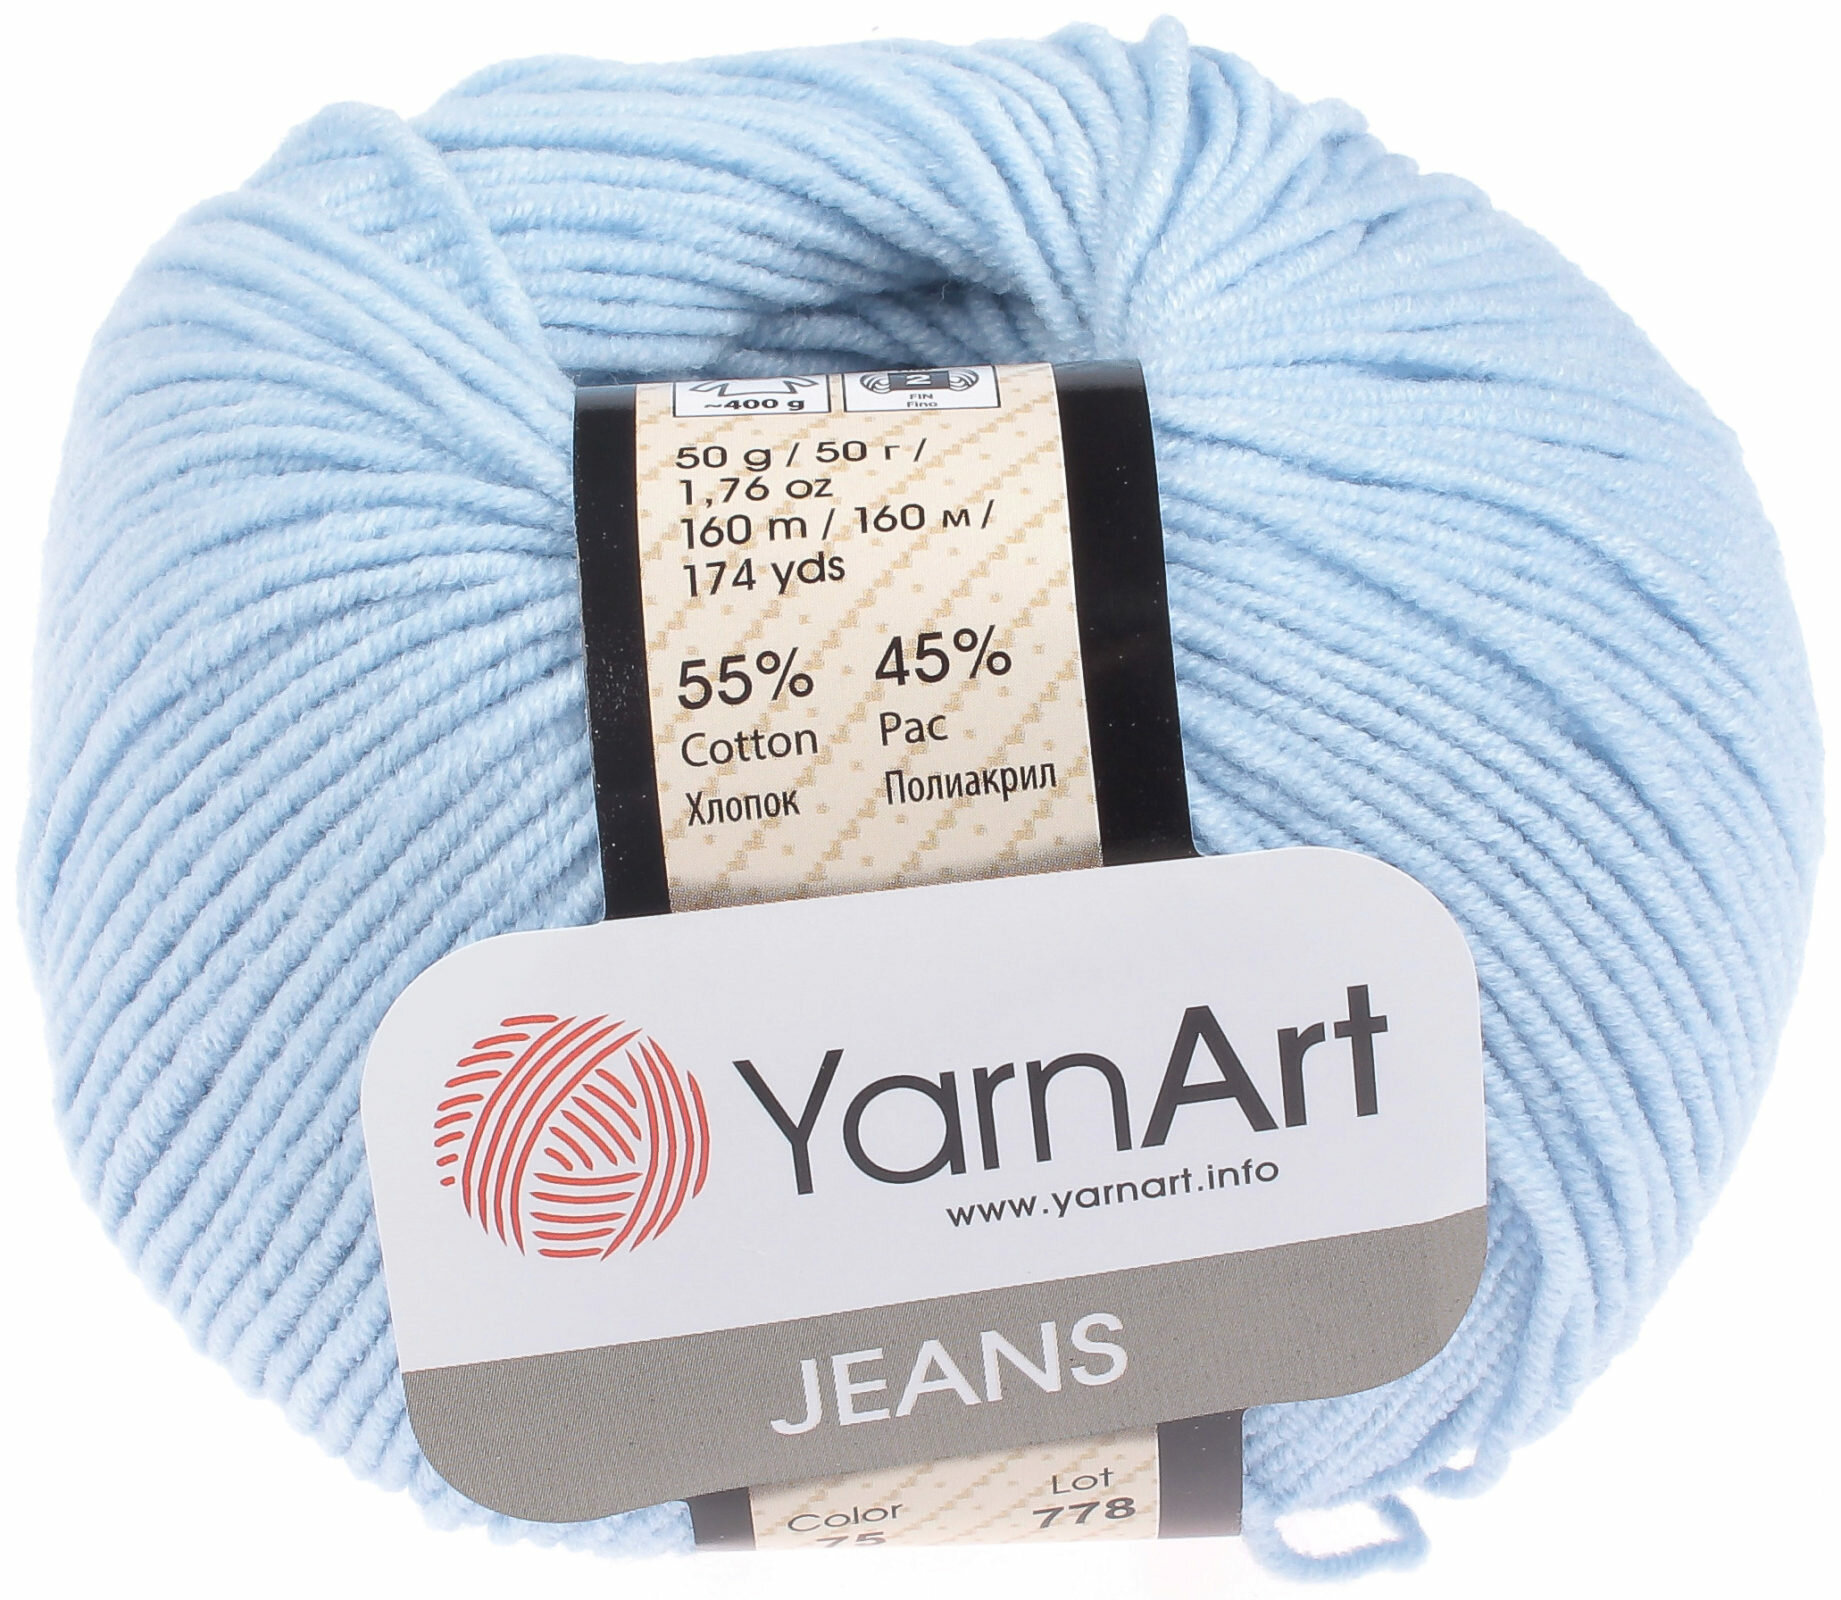 Пряжа YarnArt Jeans светло-голубой (75), 55%хлопок/45%акрил, 160м, 50г, 5шт